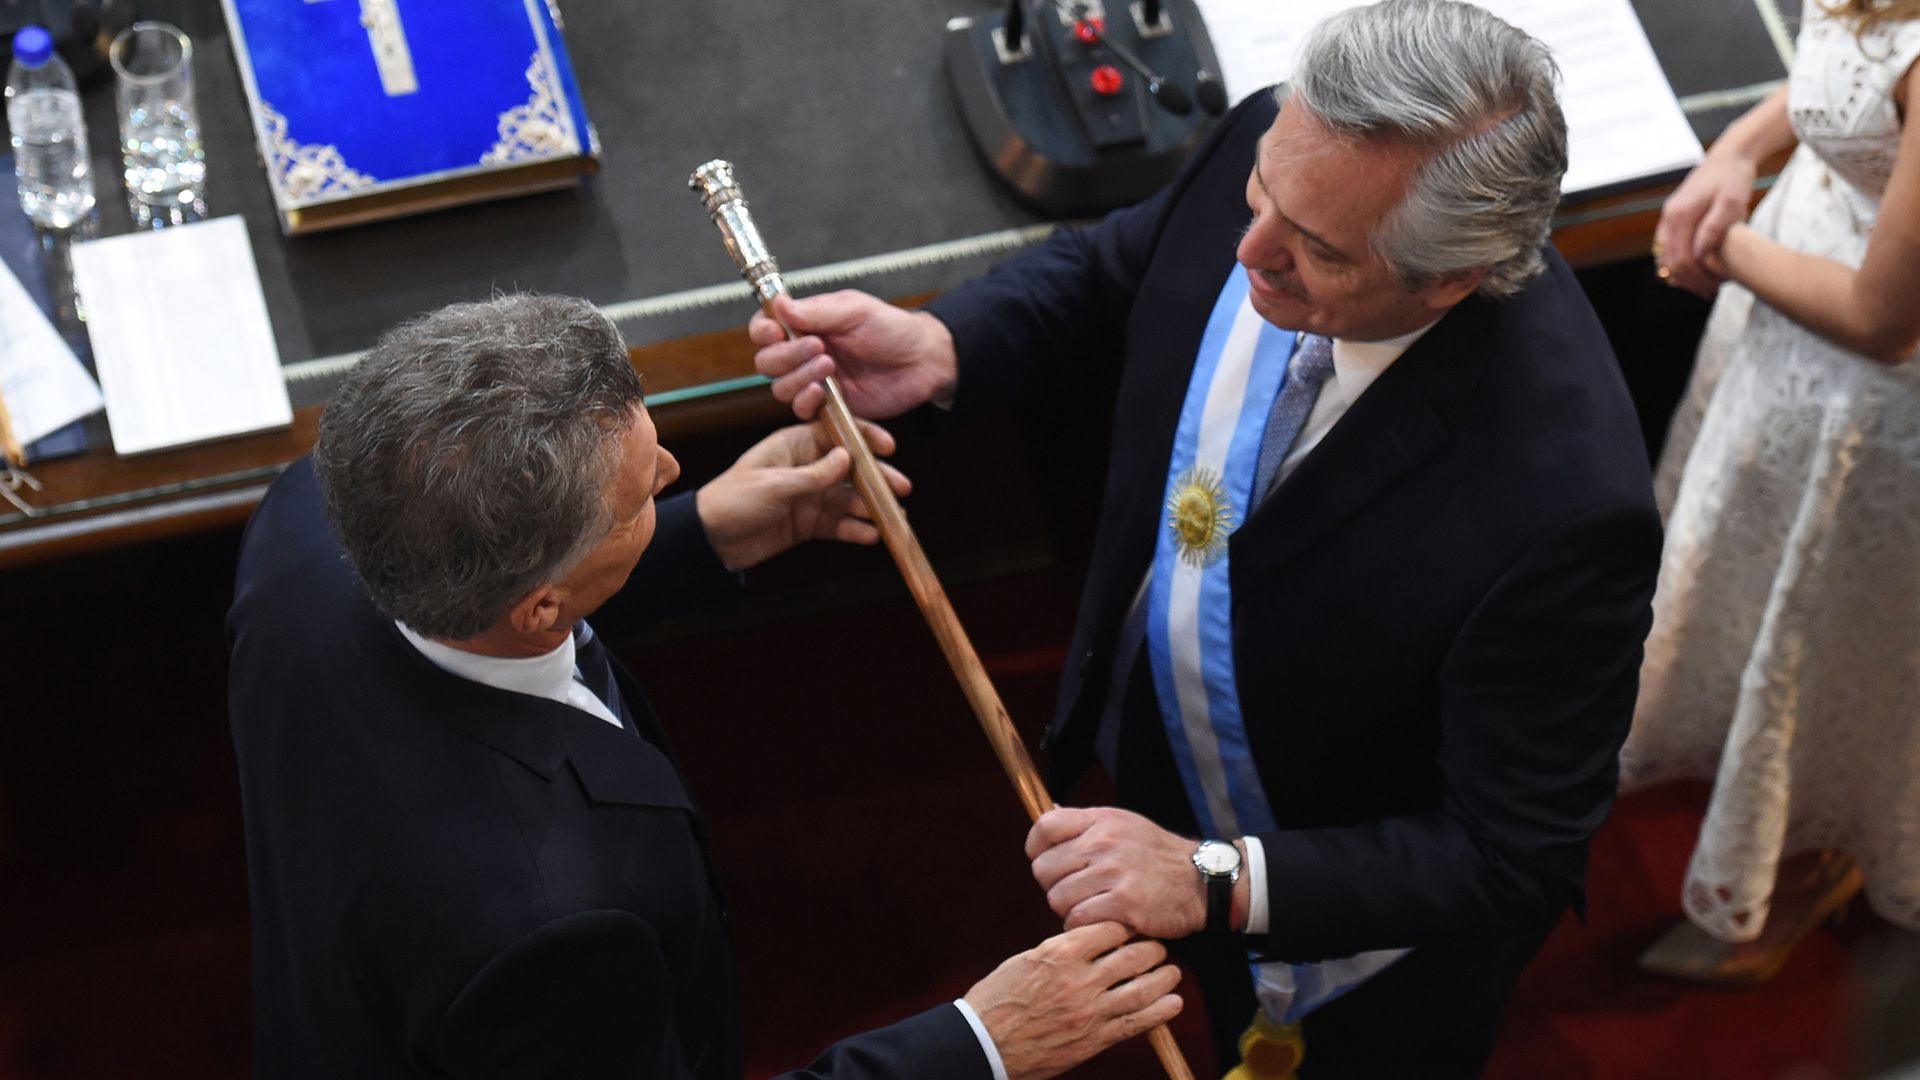 El traspaso presidencial se hizo en el Congreso. Aquí, Mauricio Macri le entrega el bastón presidencial a Alberto Fernández.  